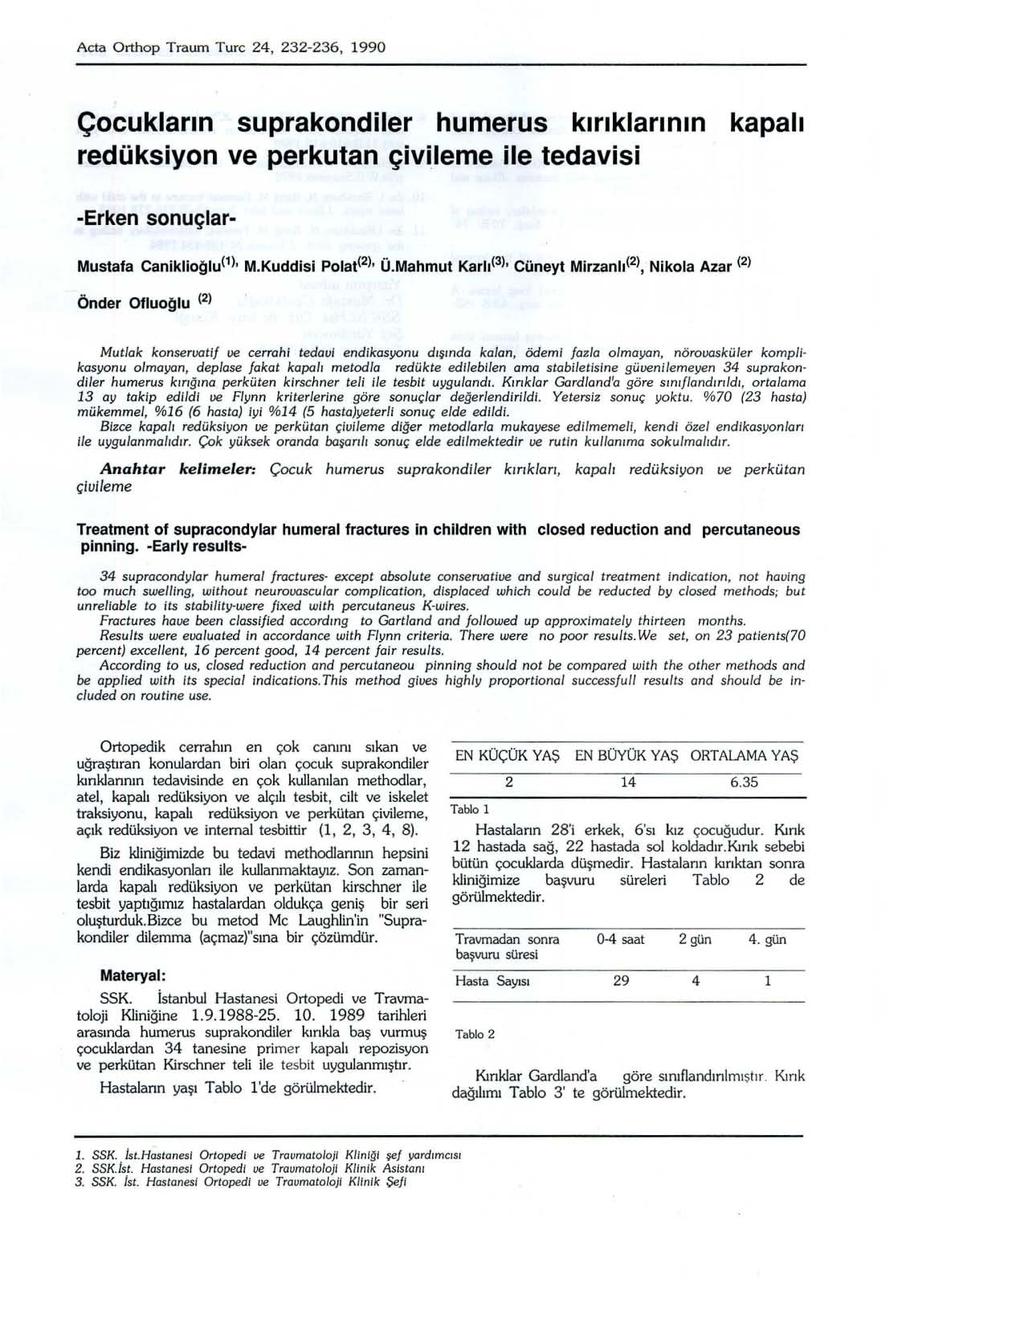 Acta Orthop Traum Turc 24, 232-236, 1990 Çocukların suprakondiler humerus kırıklarının redüksiyon ve perkutan çivileme ile tedavisi kapalı -Erken sonuçlar- Mustafa Caniklioğlu(1), M.